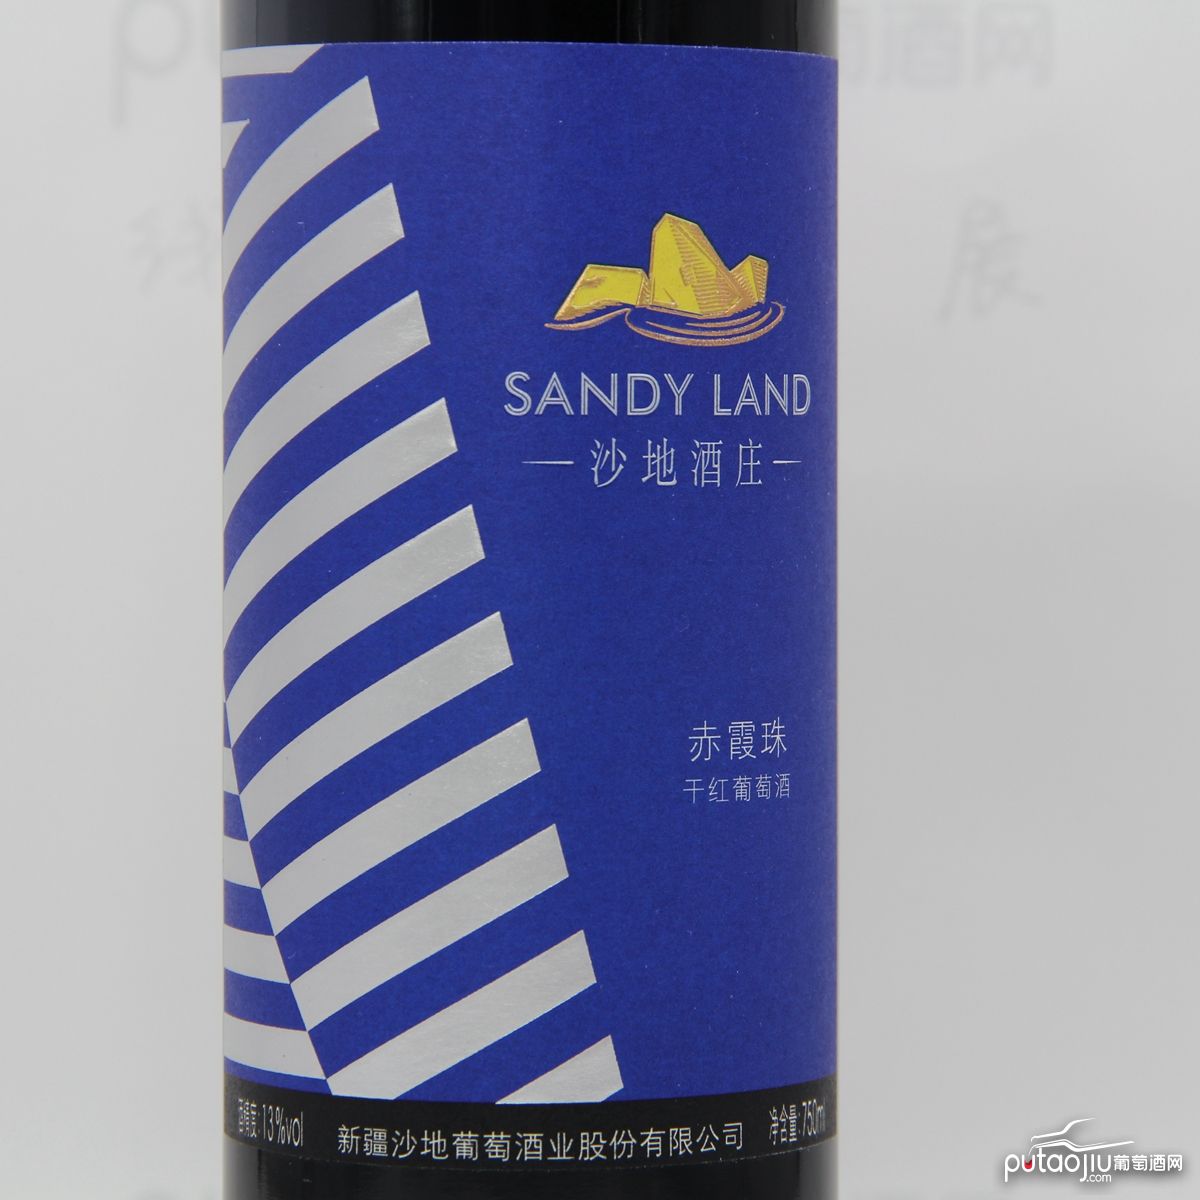 中国新疆产区沙地酒庄 赤霞珠干红葡萄酒